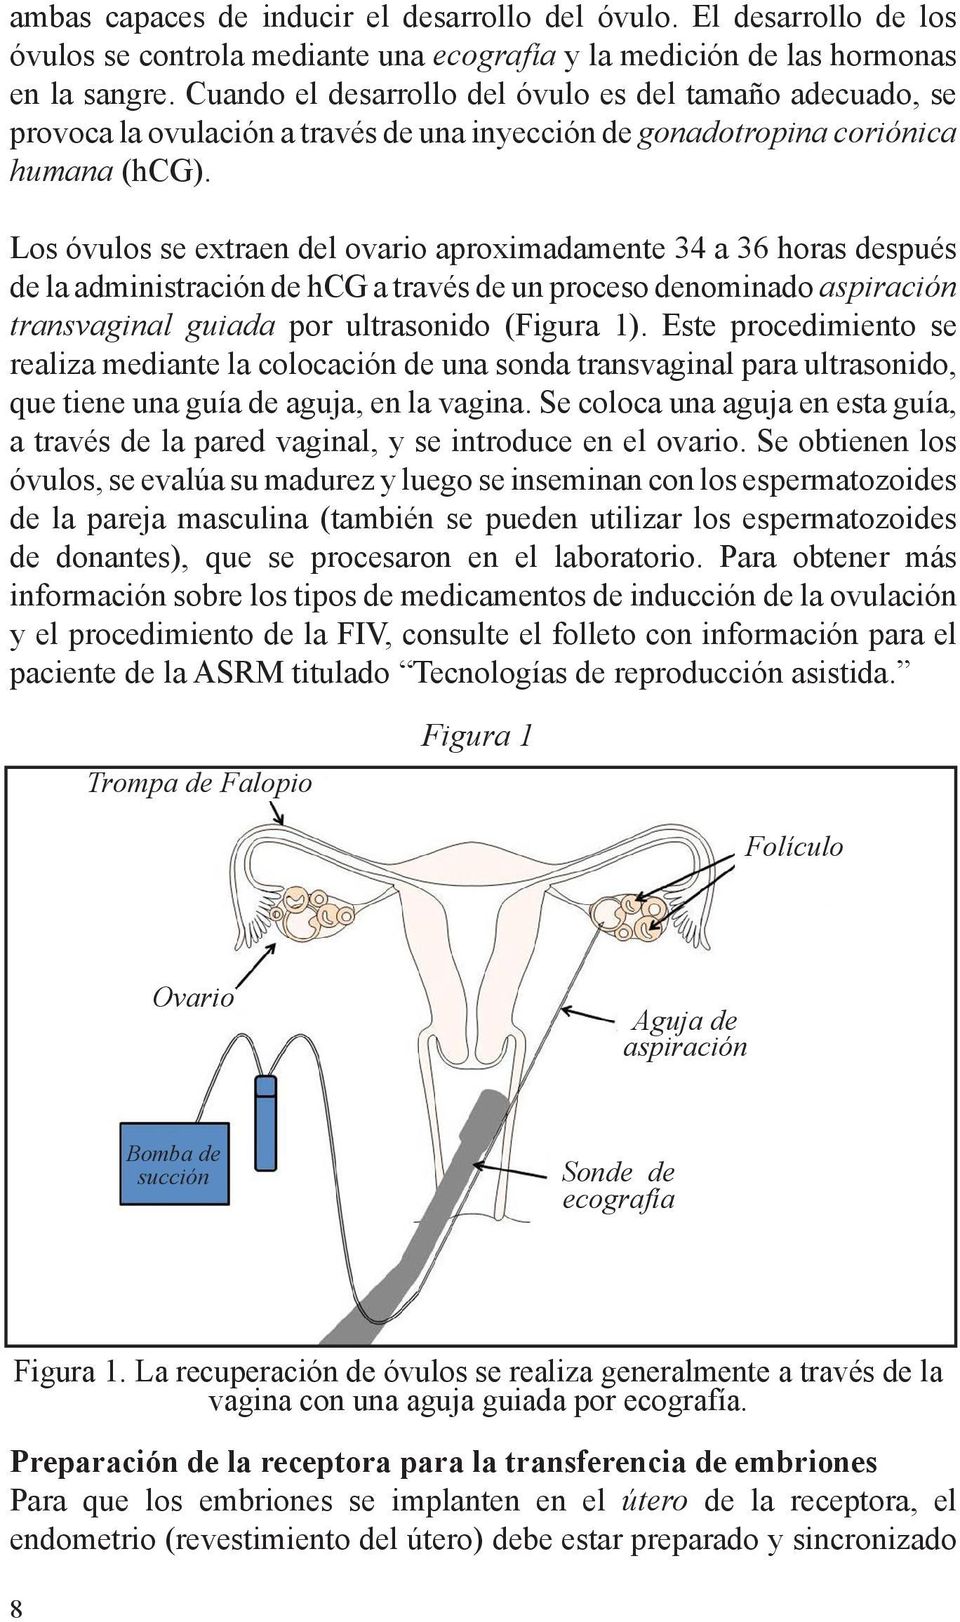 Los óvulos se extraen del ovario aproximadamente 34 a 36 horas después de la administración de hcg a través de un proceso denominado aspiración transvaginal guiada por ultrasonido (Figura 1).